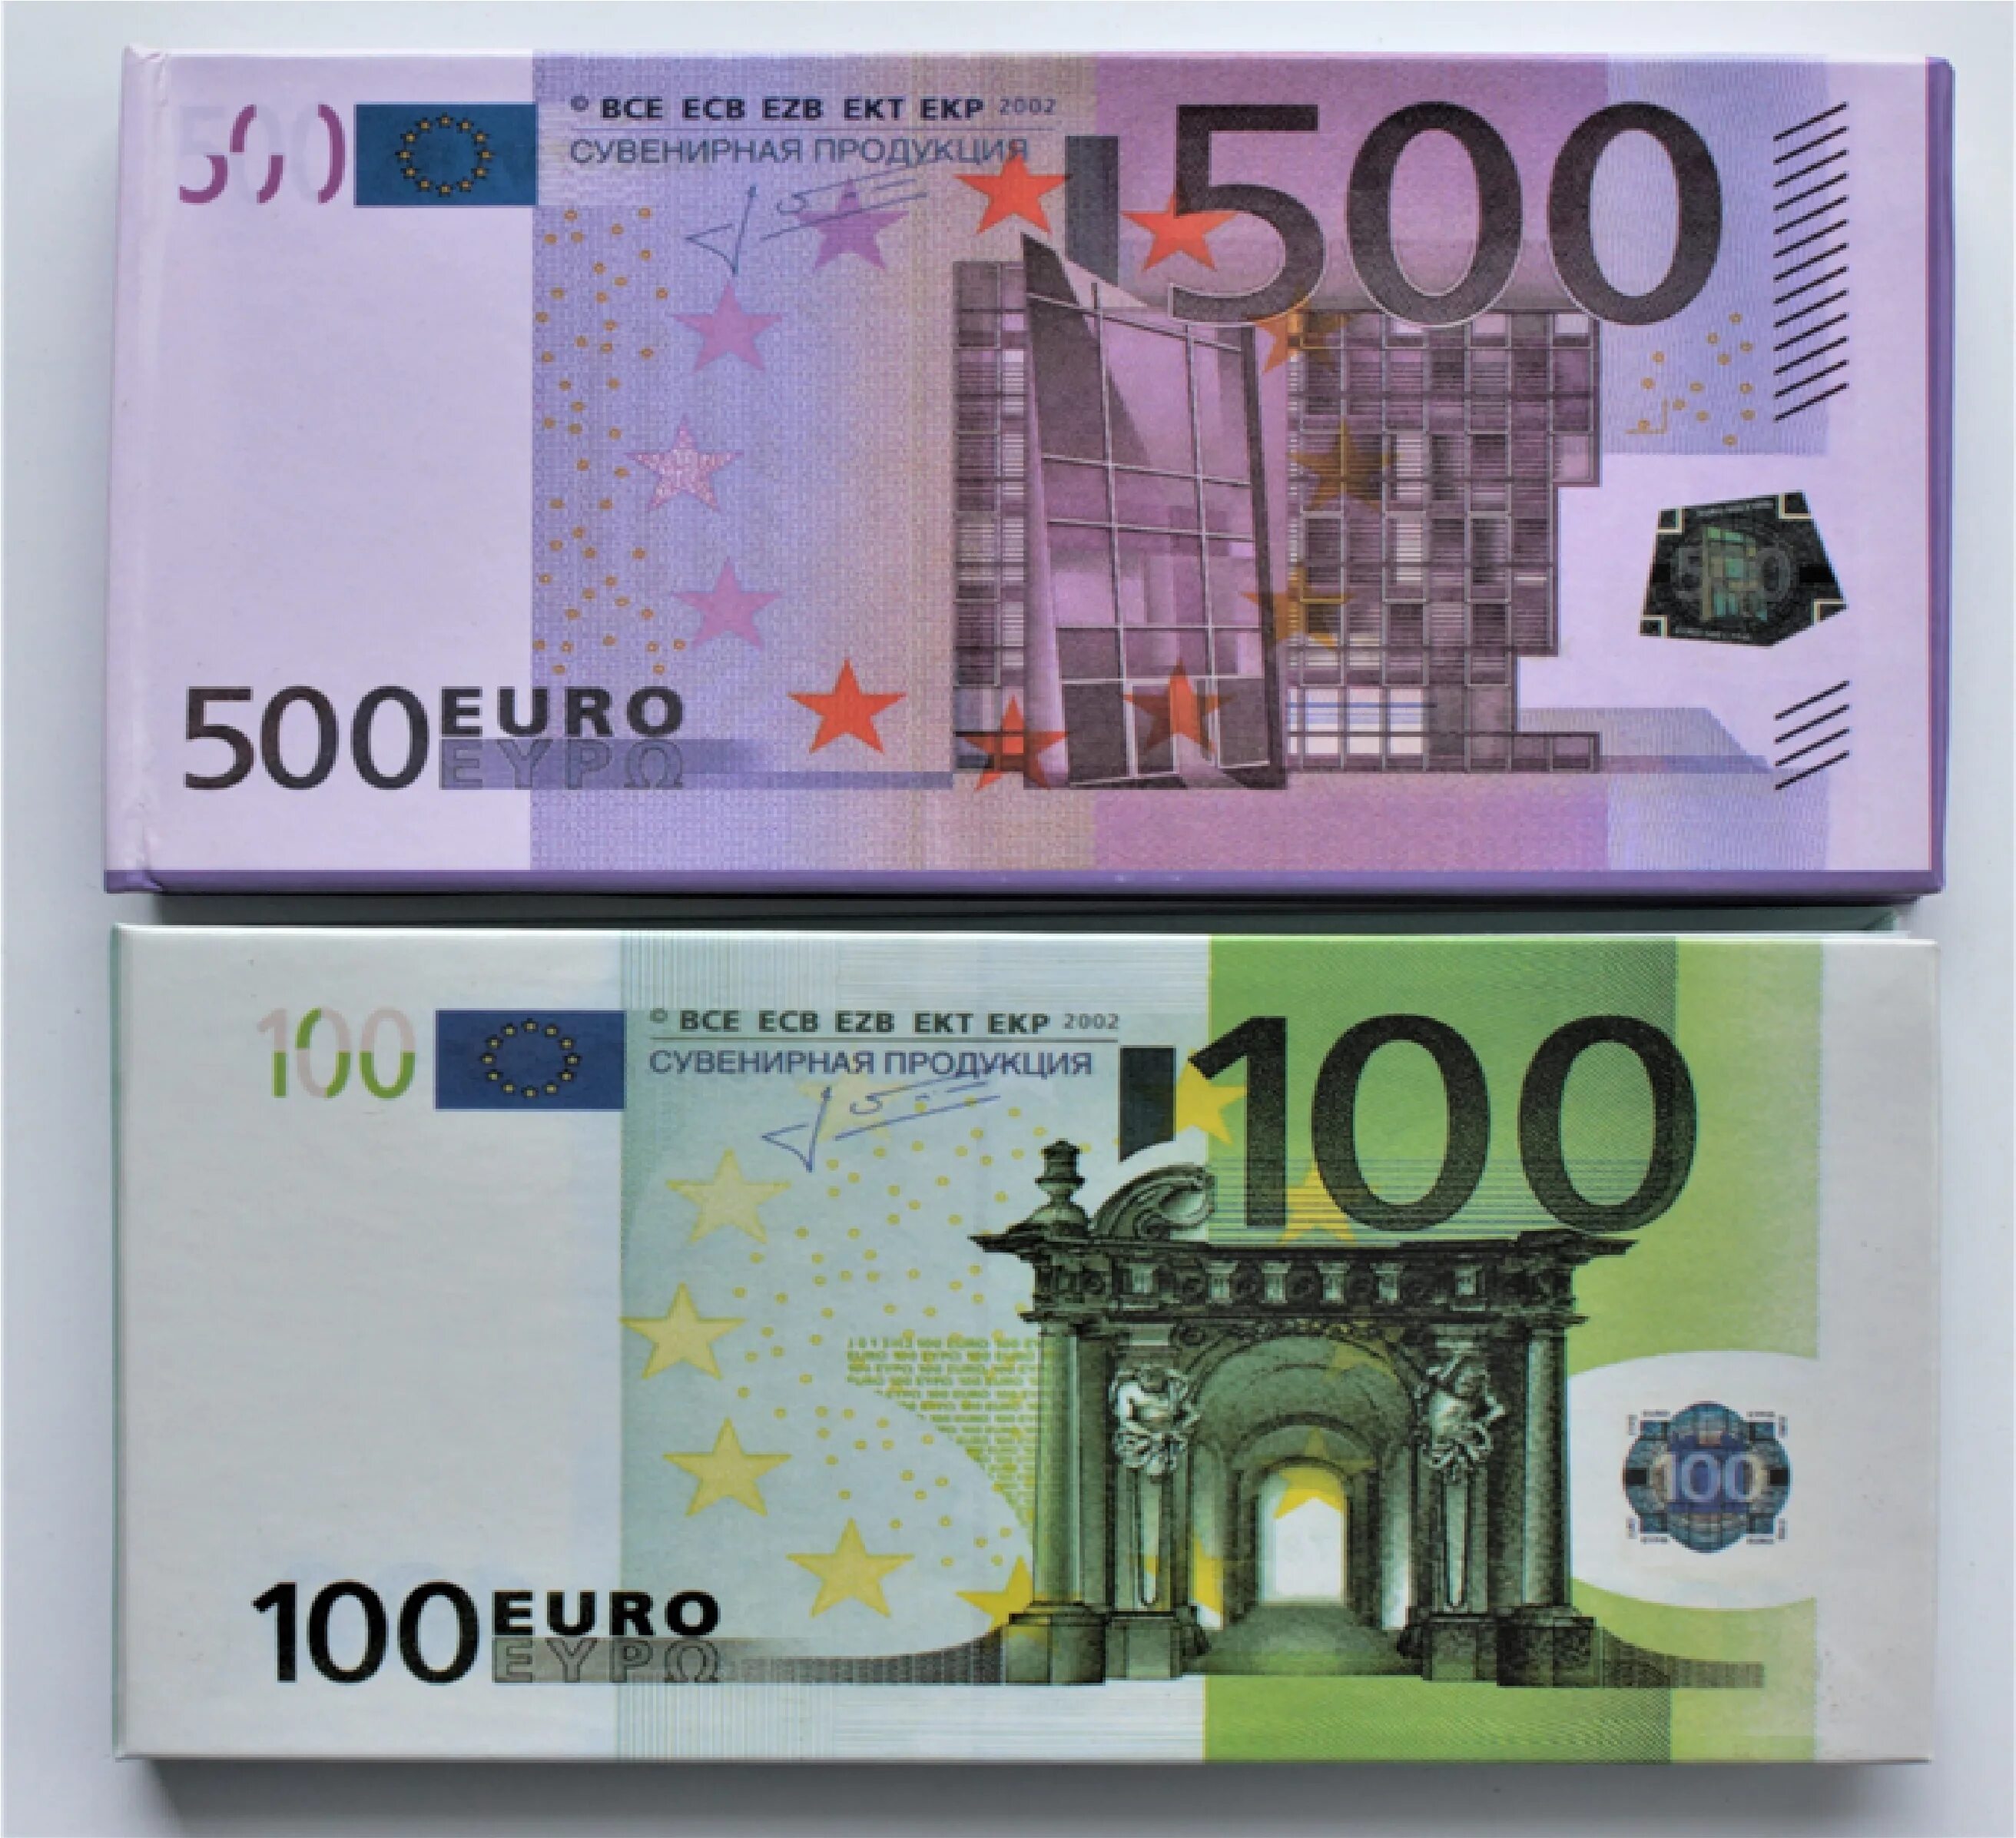 500 Евро купюра 2002. 100 Евро купюра. 500 Евро и 100 евро. Деньги 500 евро.